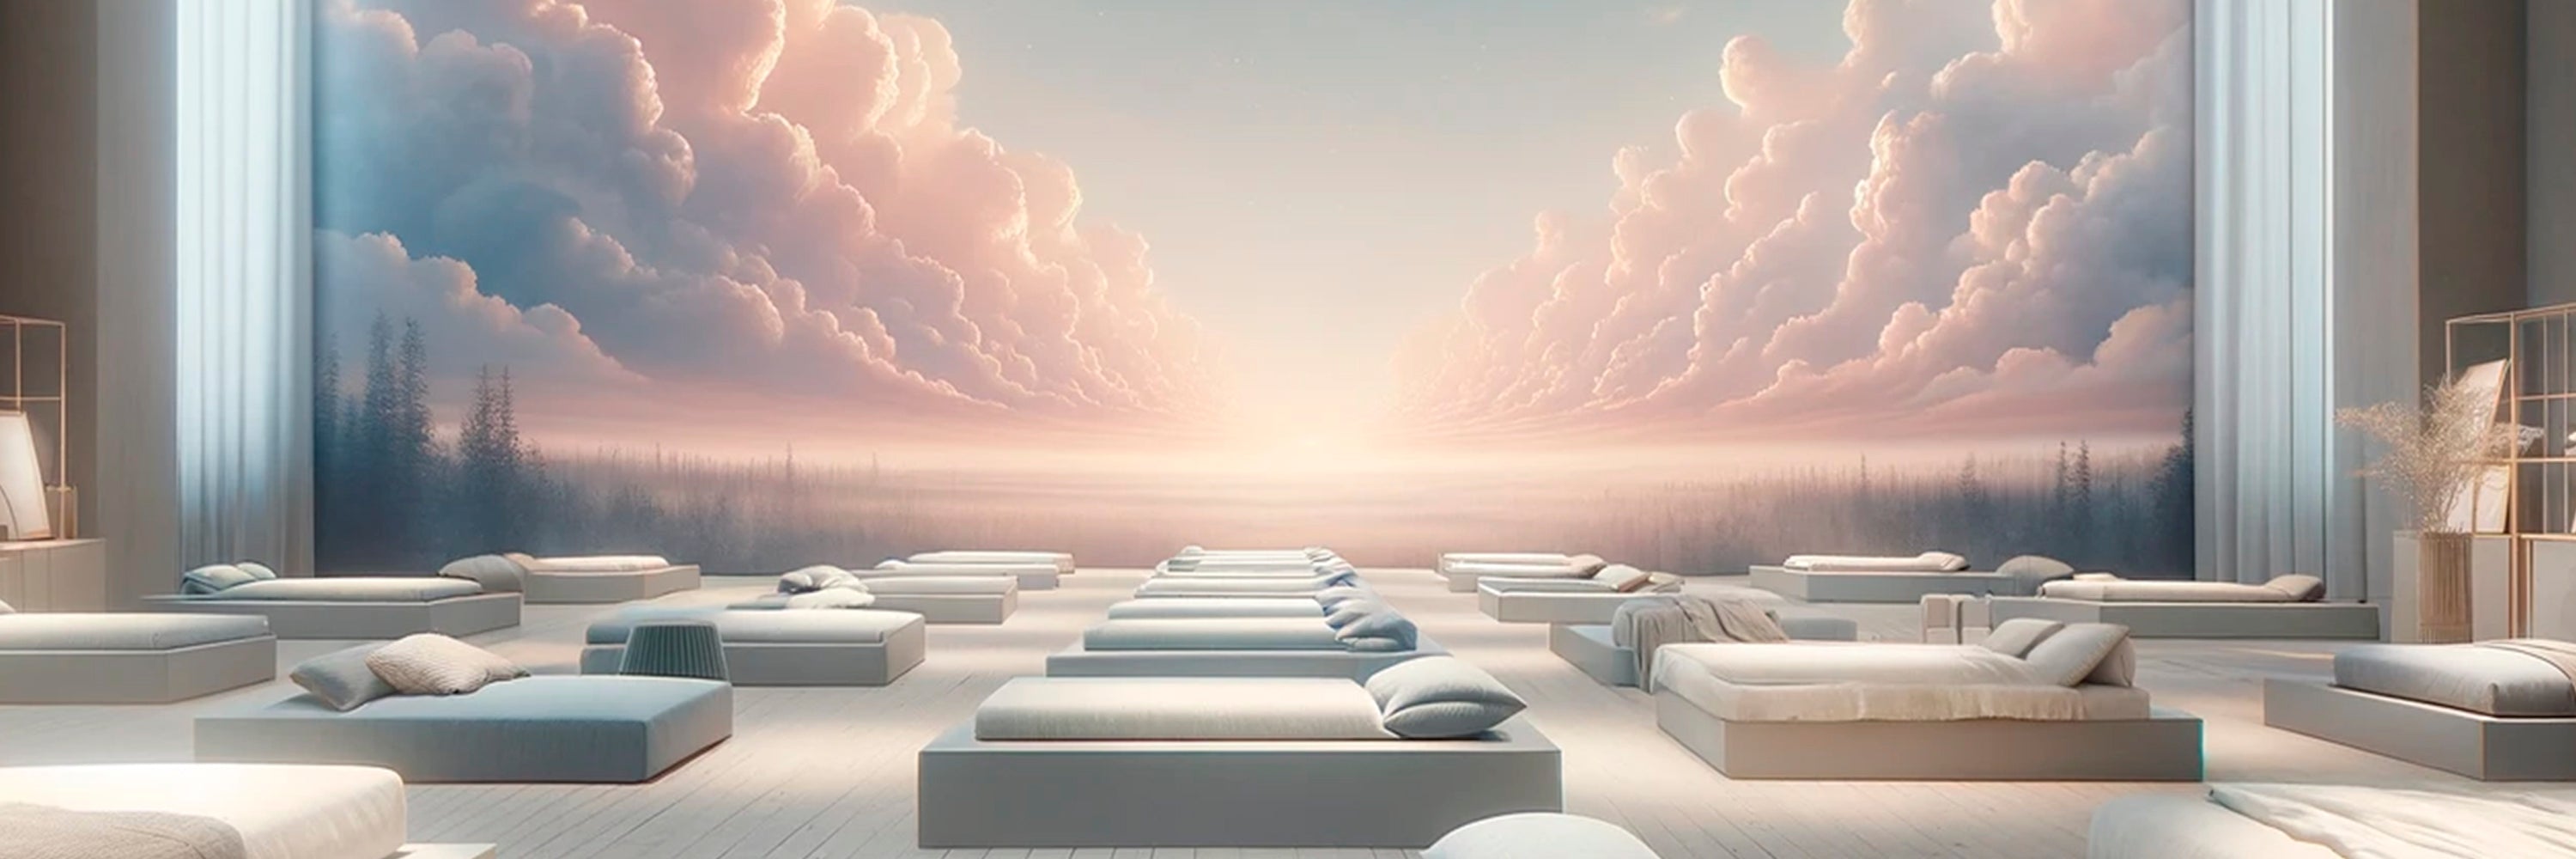 Senge showroom med drømmeagtig solopgang - AI genereret foto